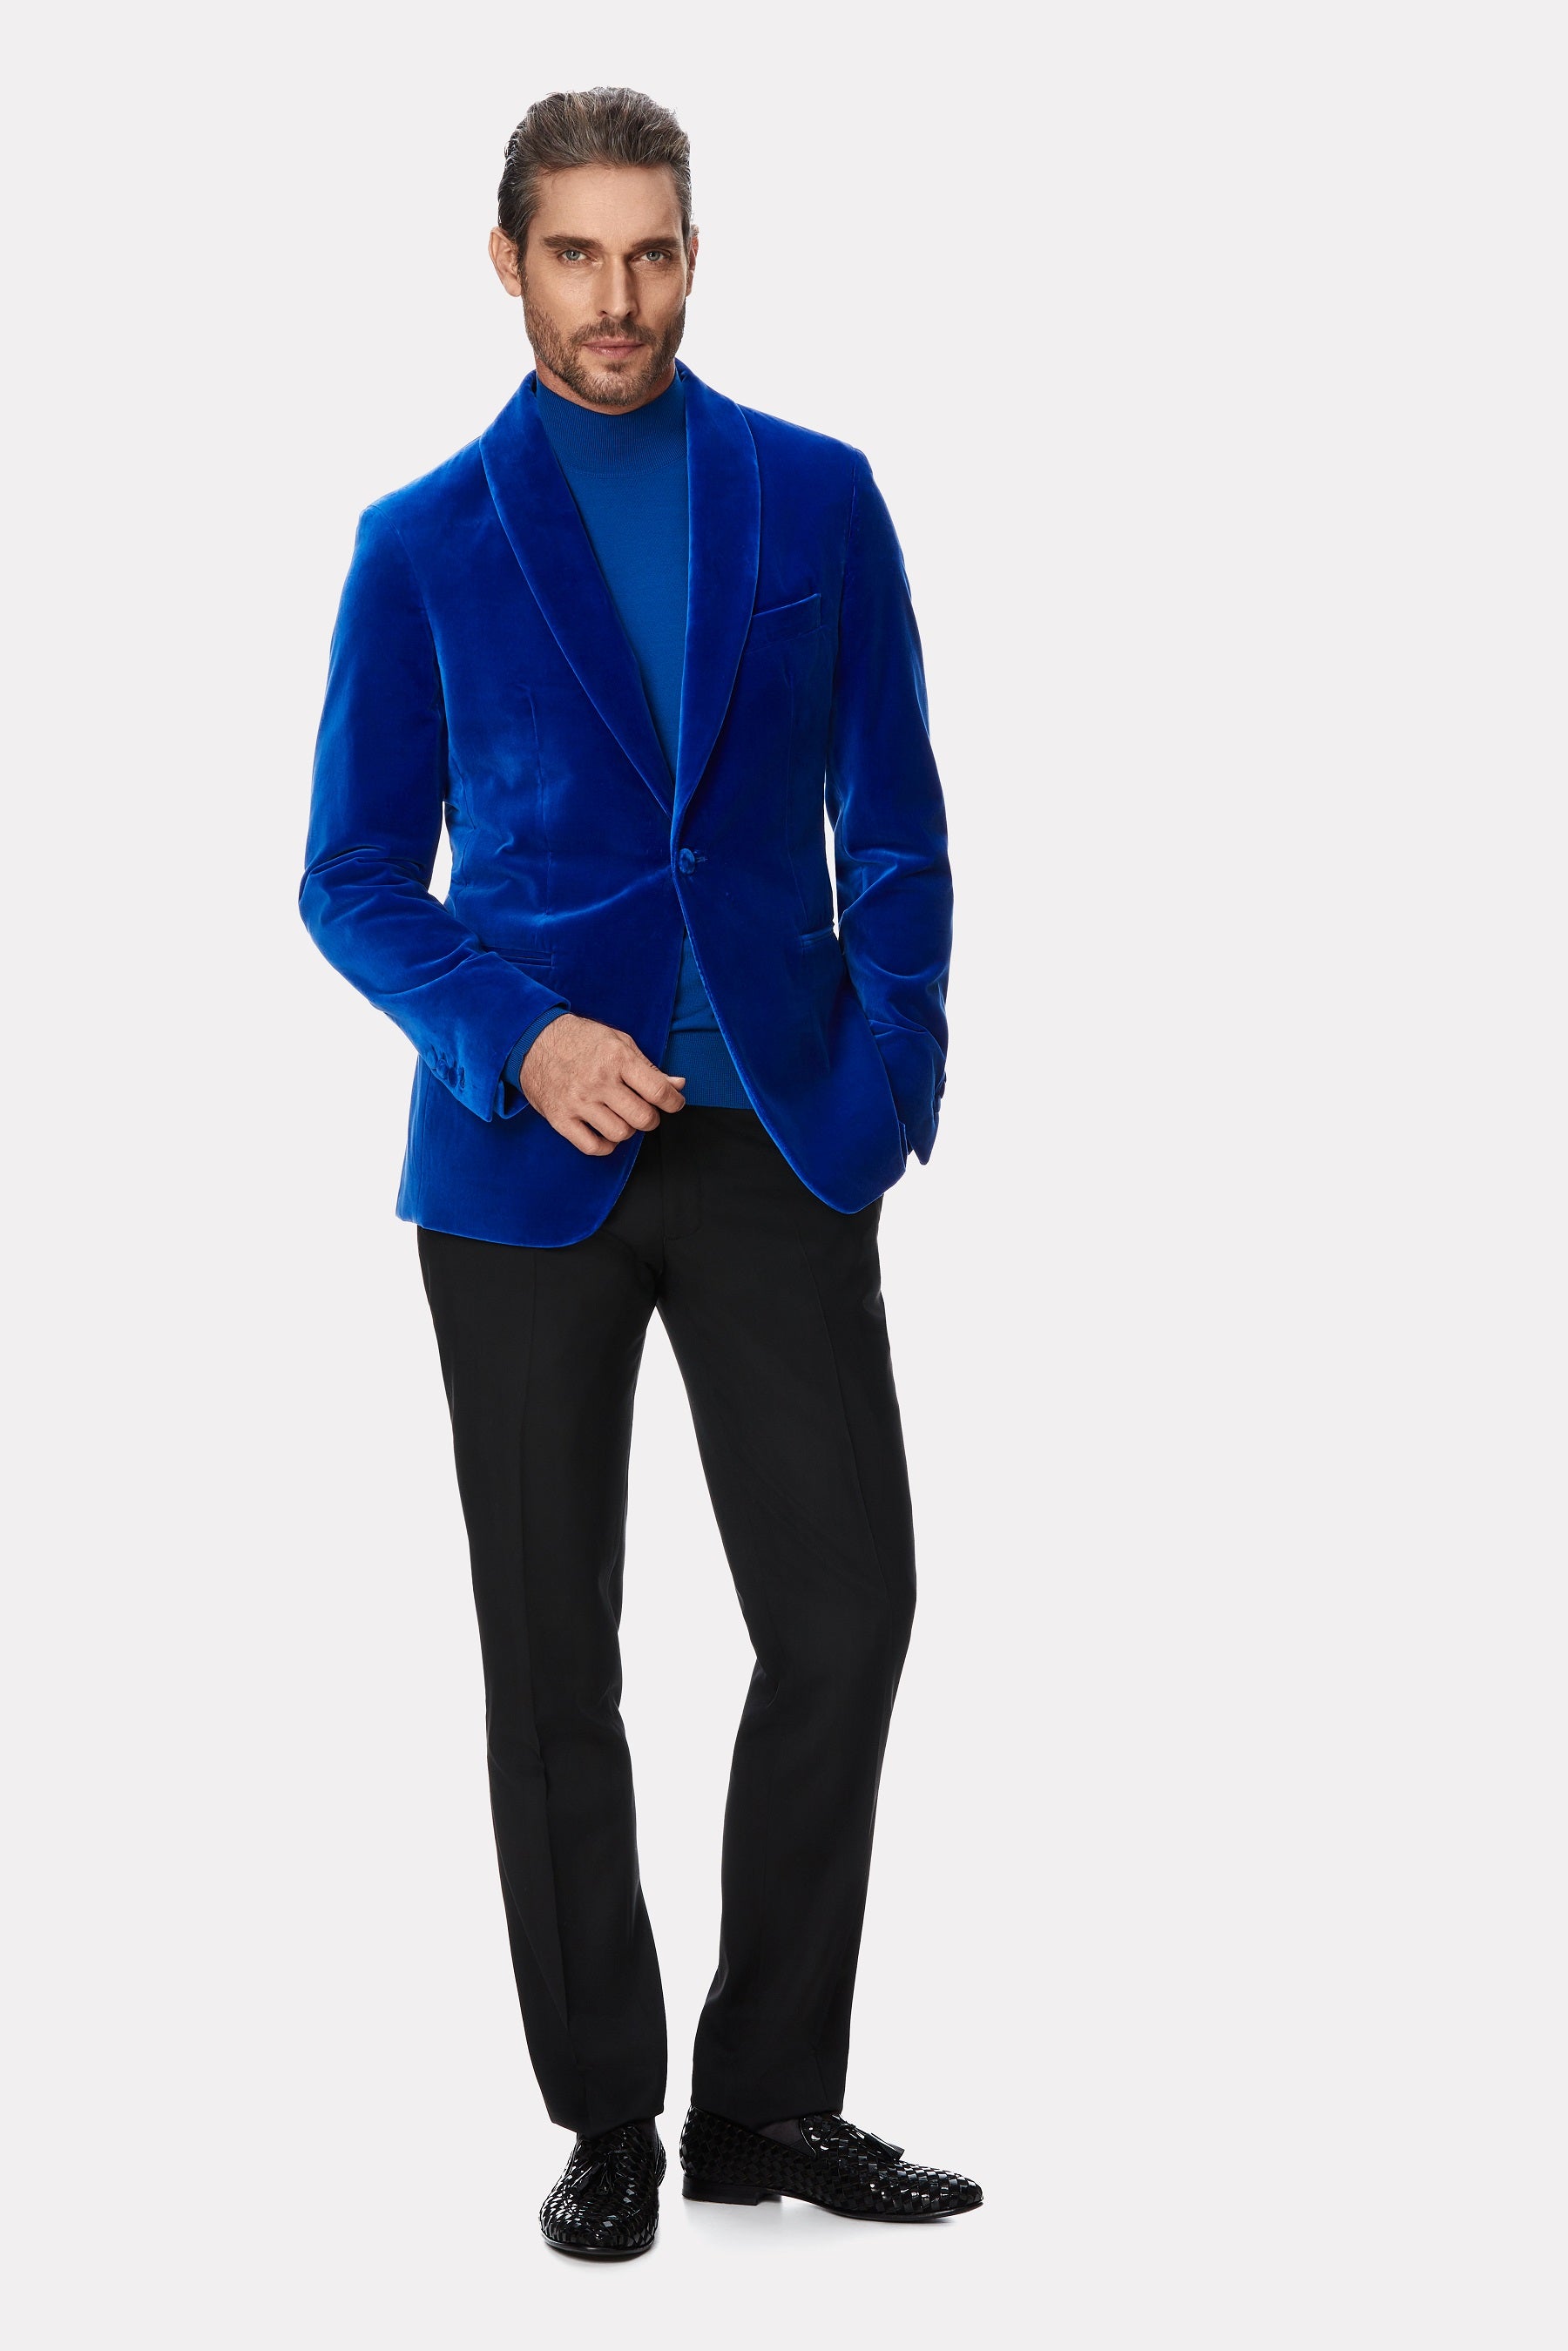 Royal blue velvet tuxedo jacket